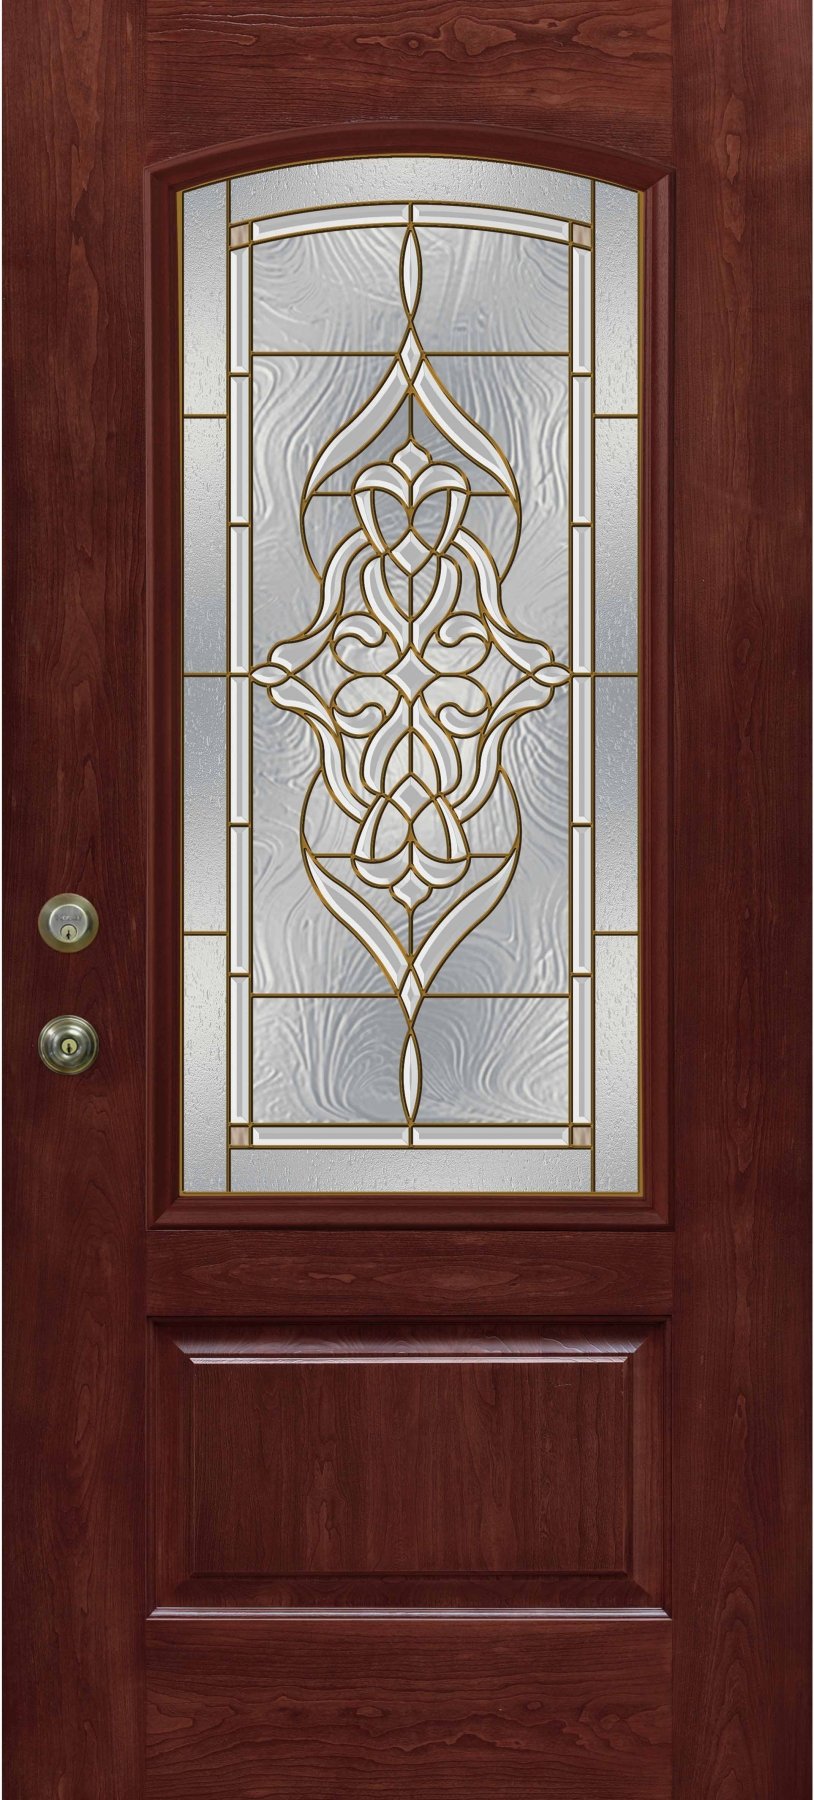 Buffalo, NY Decorative Glass Doors